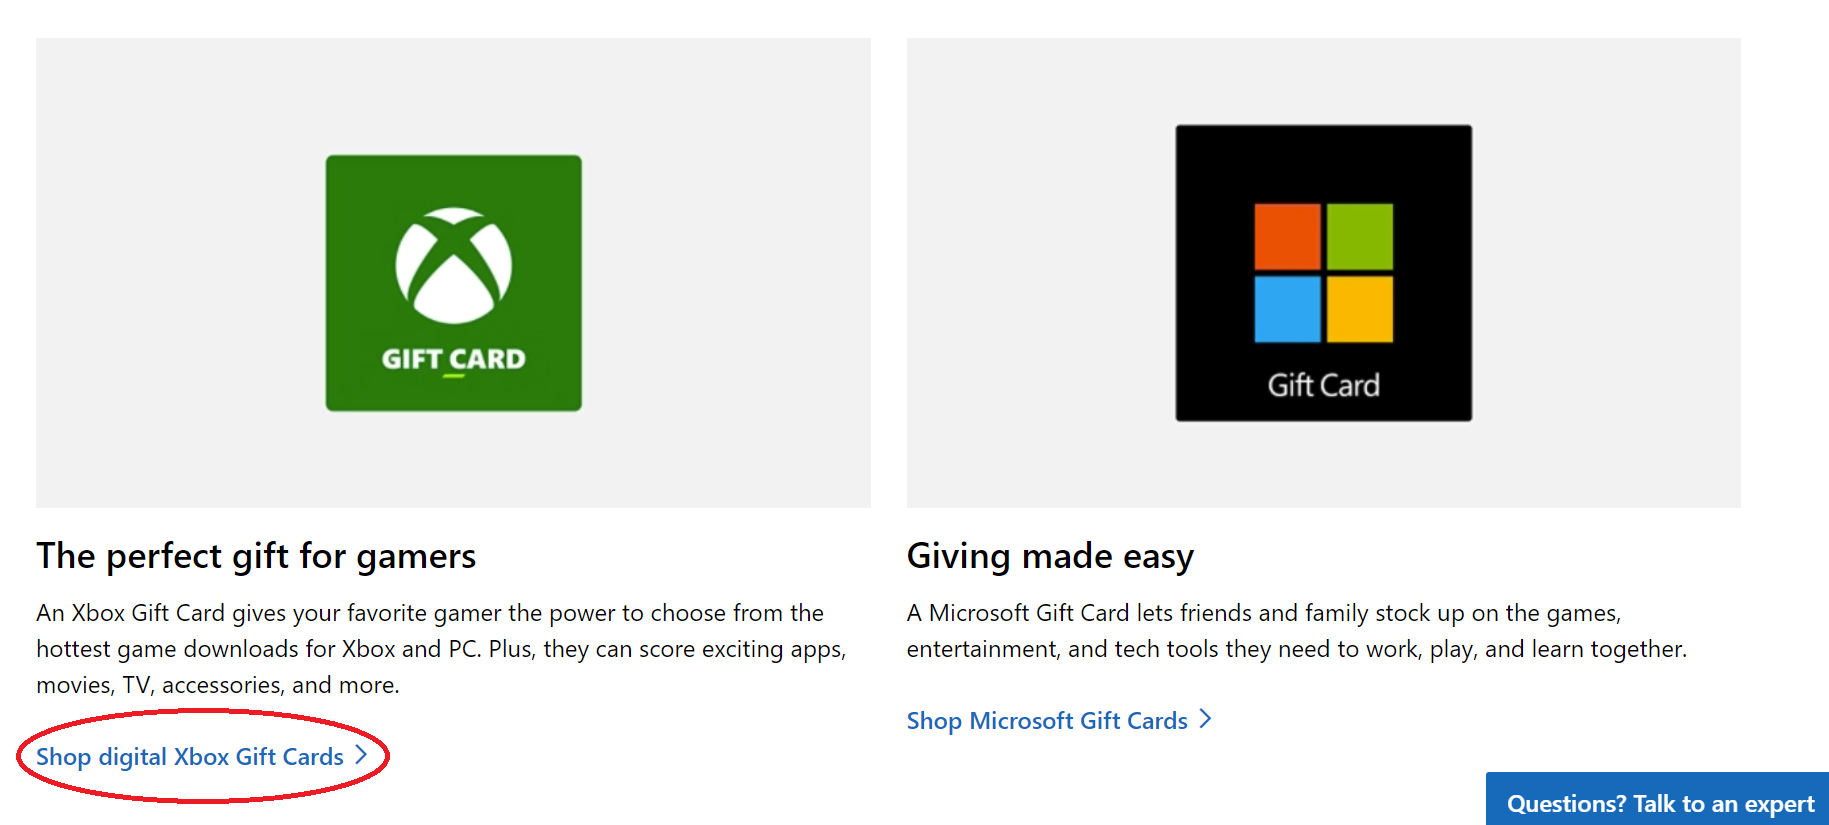 Compre una tarjeta de regalo de Xbox digital